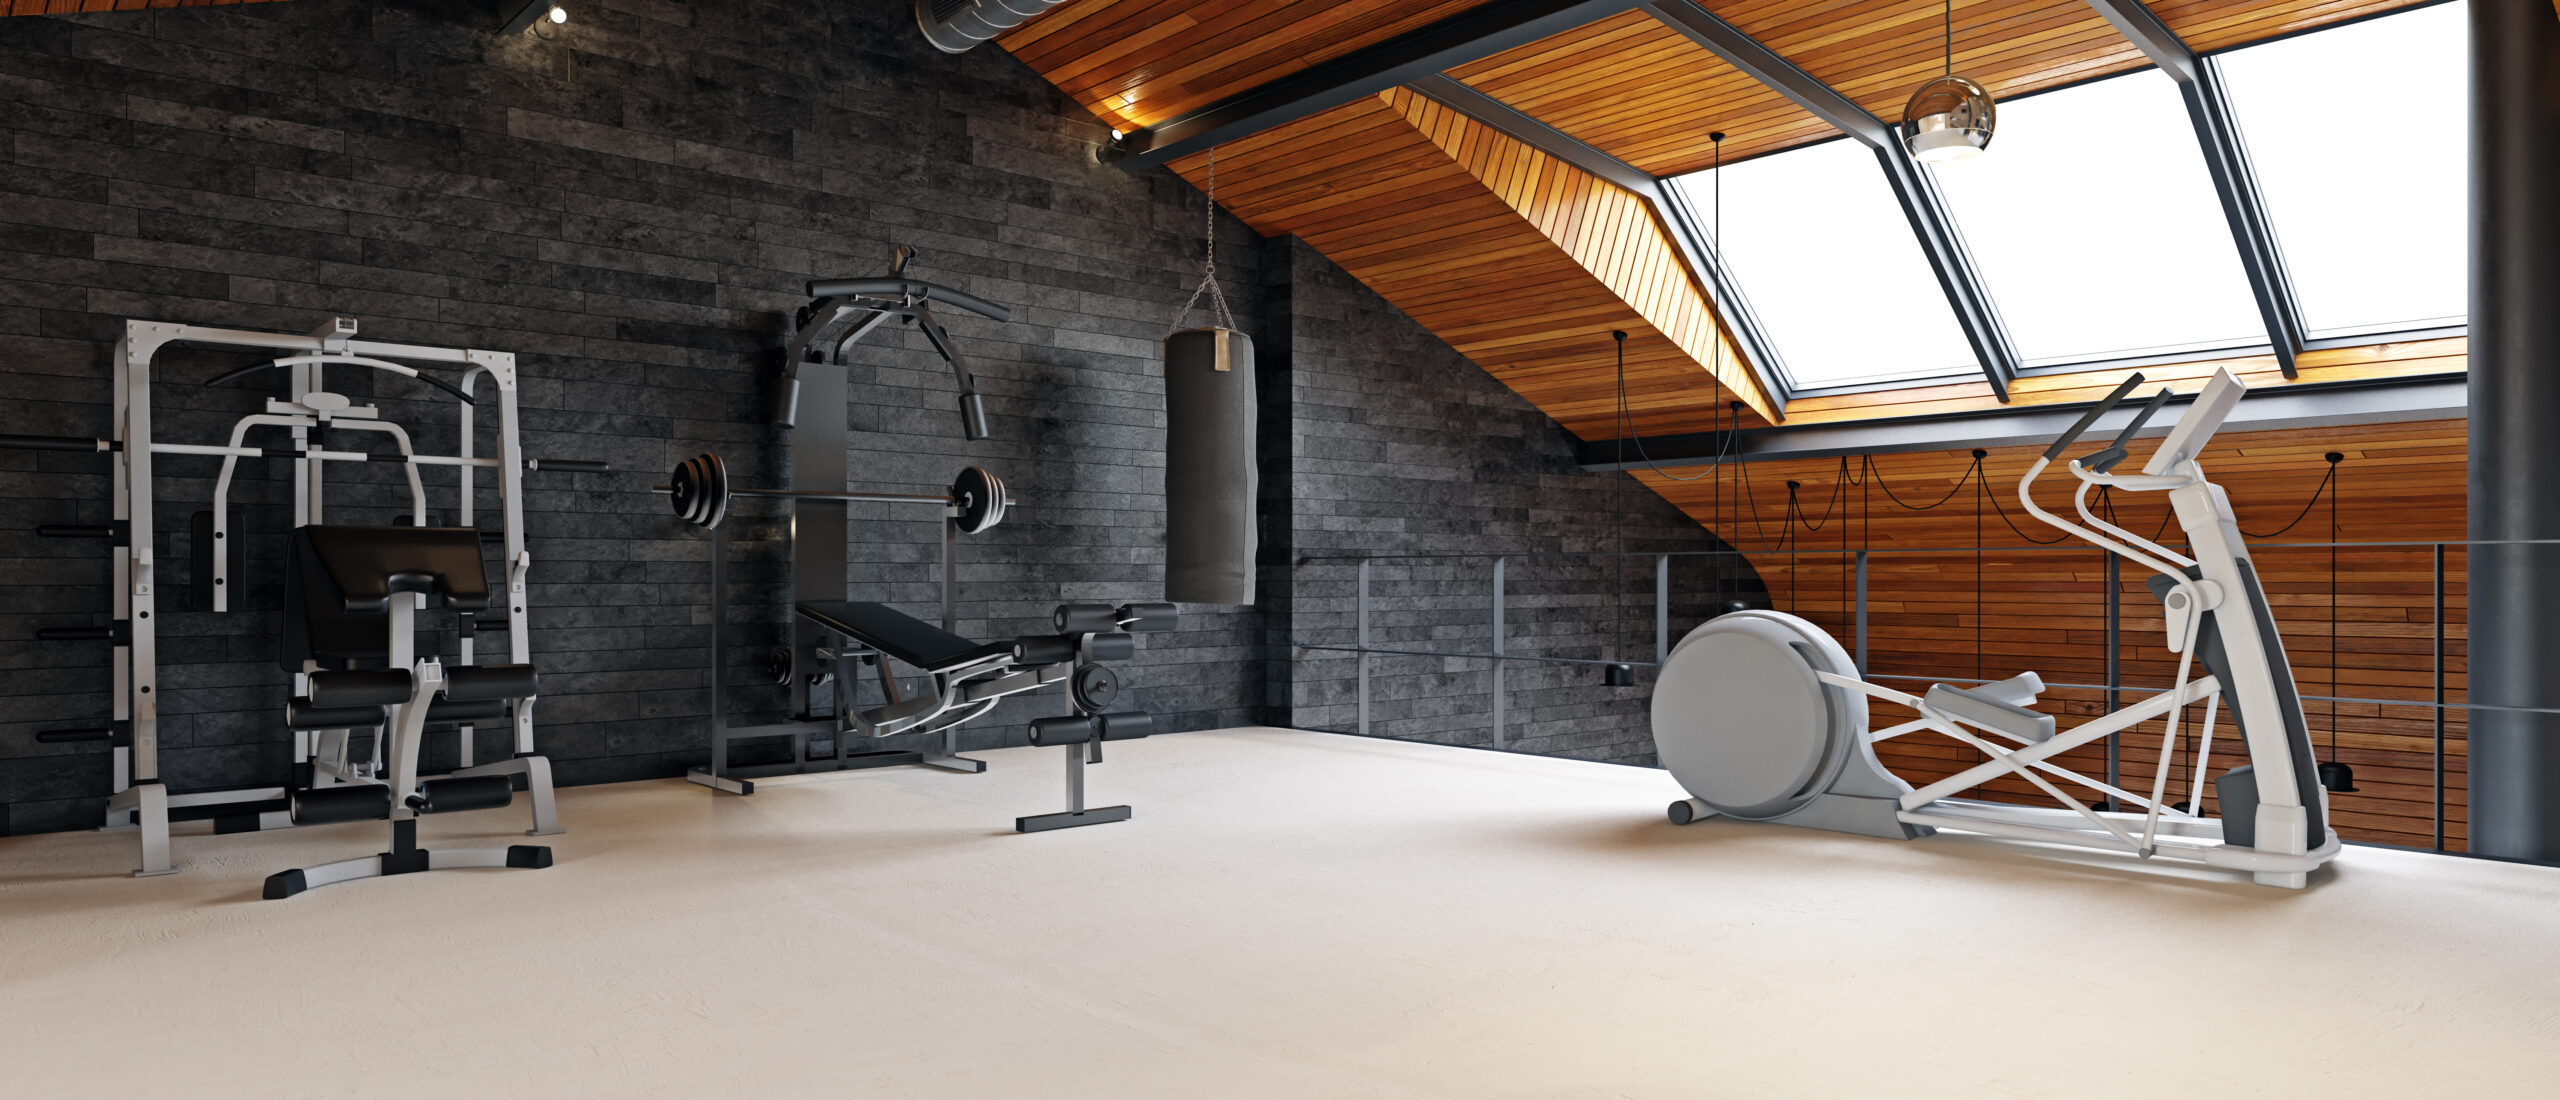 Home Gym Design: The Power Of Light & Sound